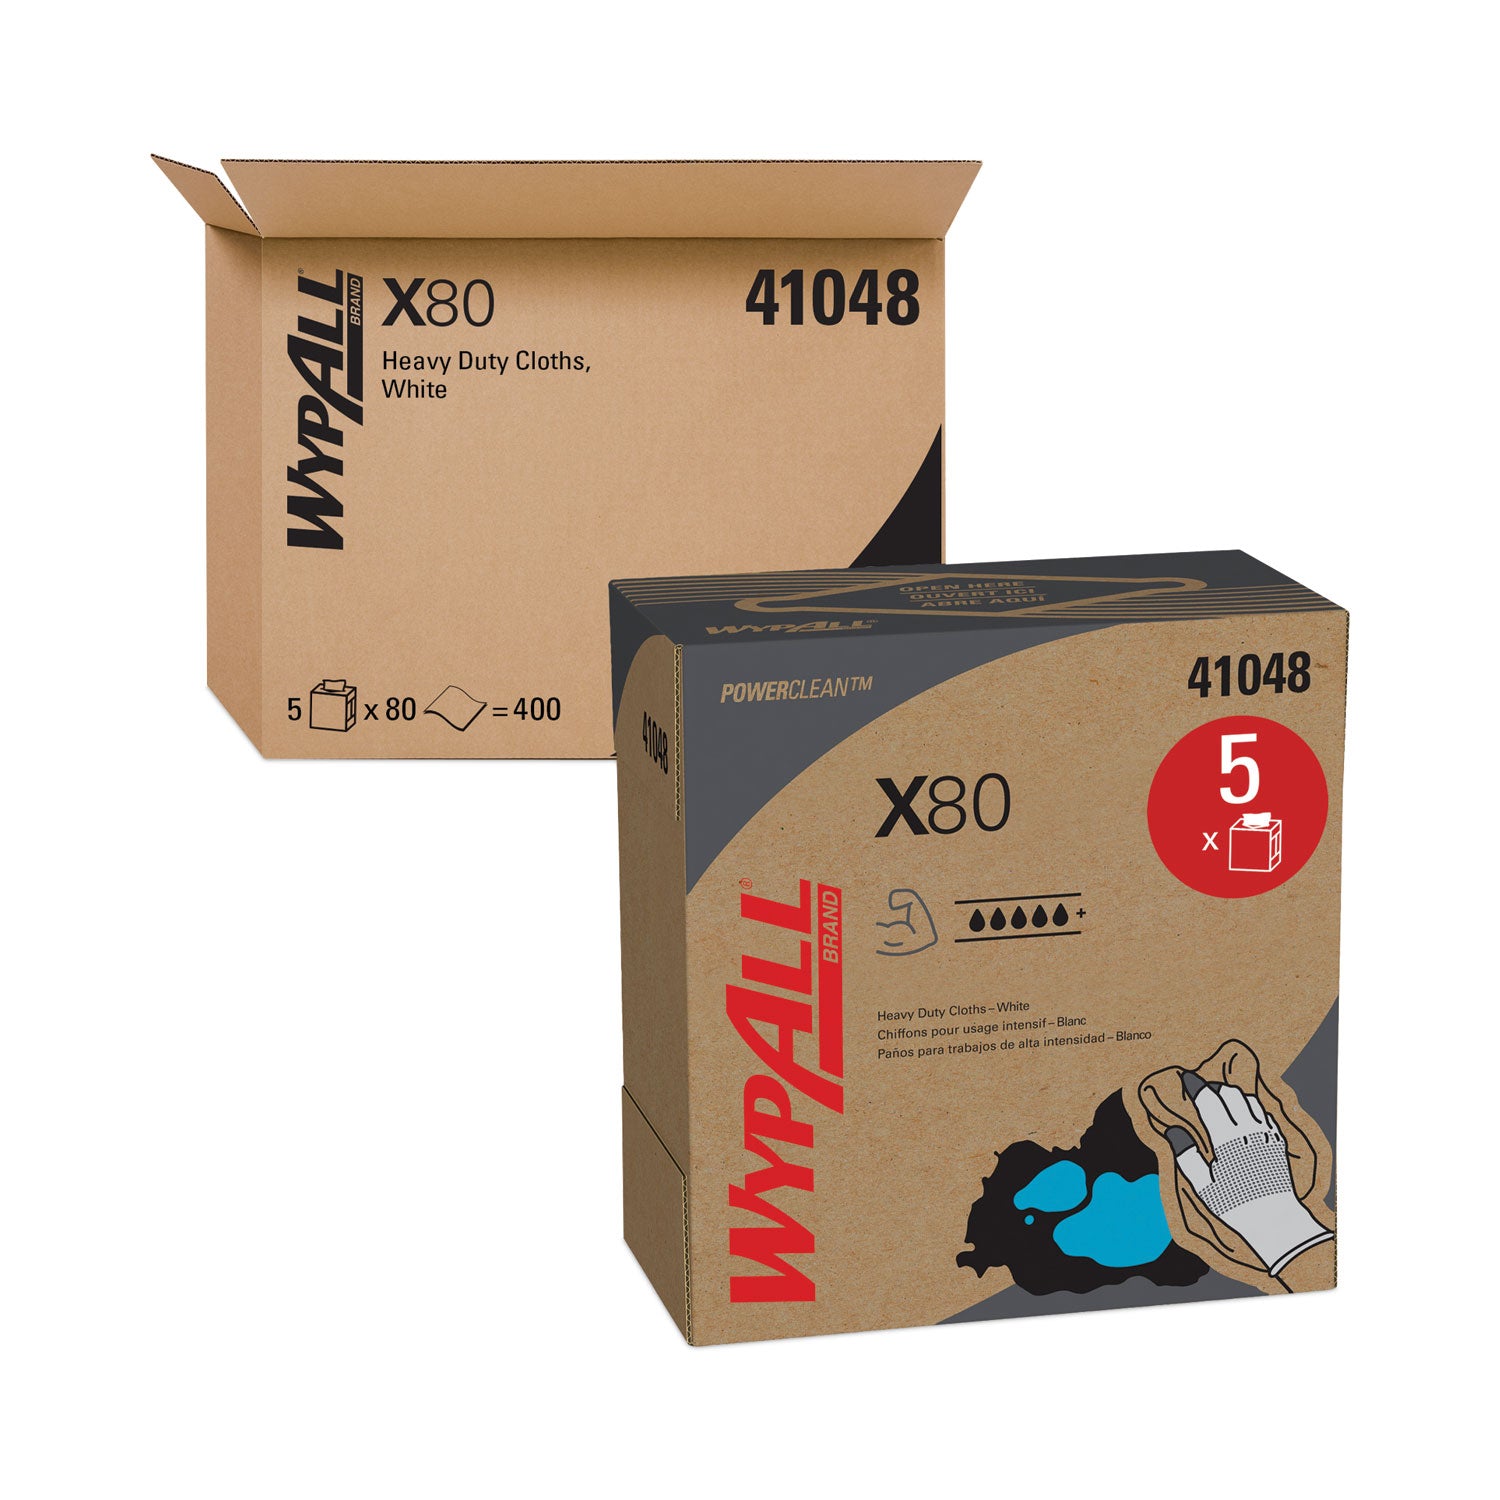 X80 Cloths, HYDROKNIT, POP-UP Box, 8.34 x 16.8, White, 80/Box, 5 Boxes/Carton - 